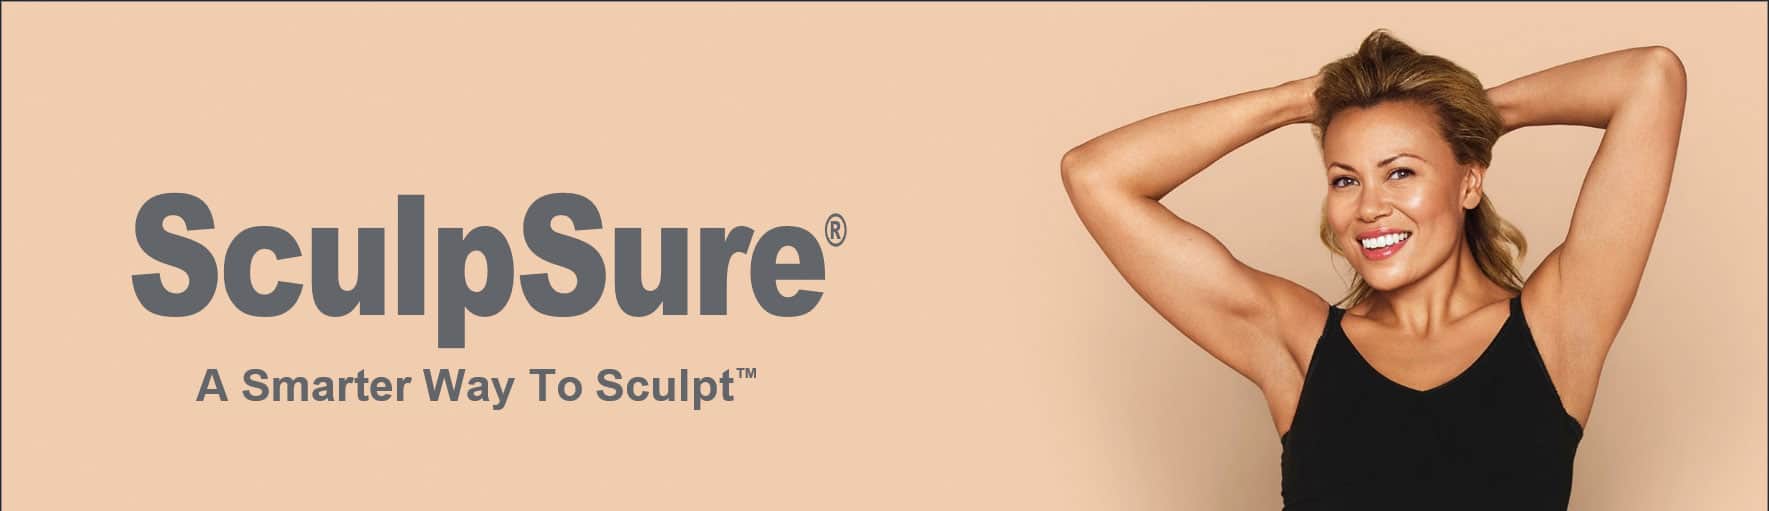 SculpSure header